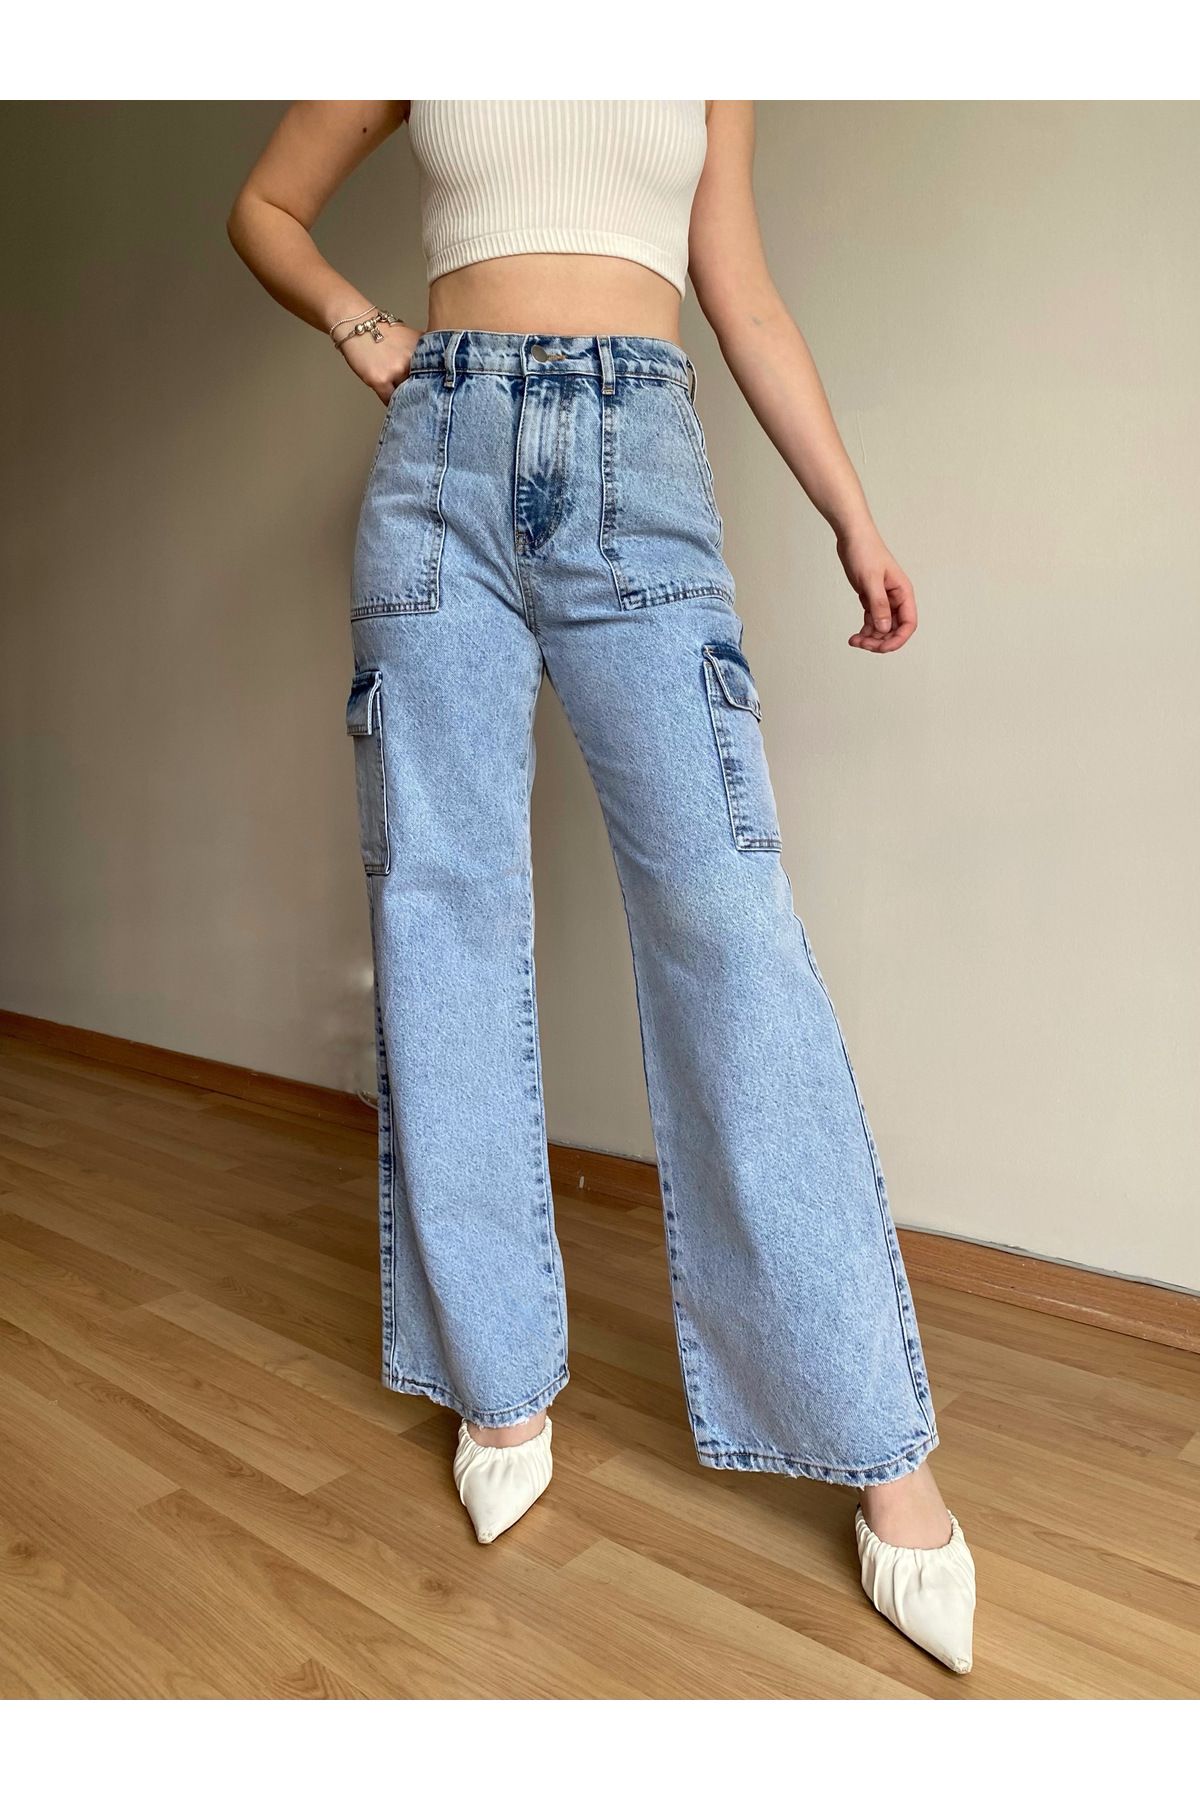 Butik Kadın Yüksek Bel Açık Mavi Yıkamalı Bol Geniş Paça Kargo Cepli Jeans Kot Pantolon